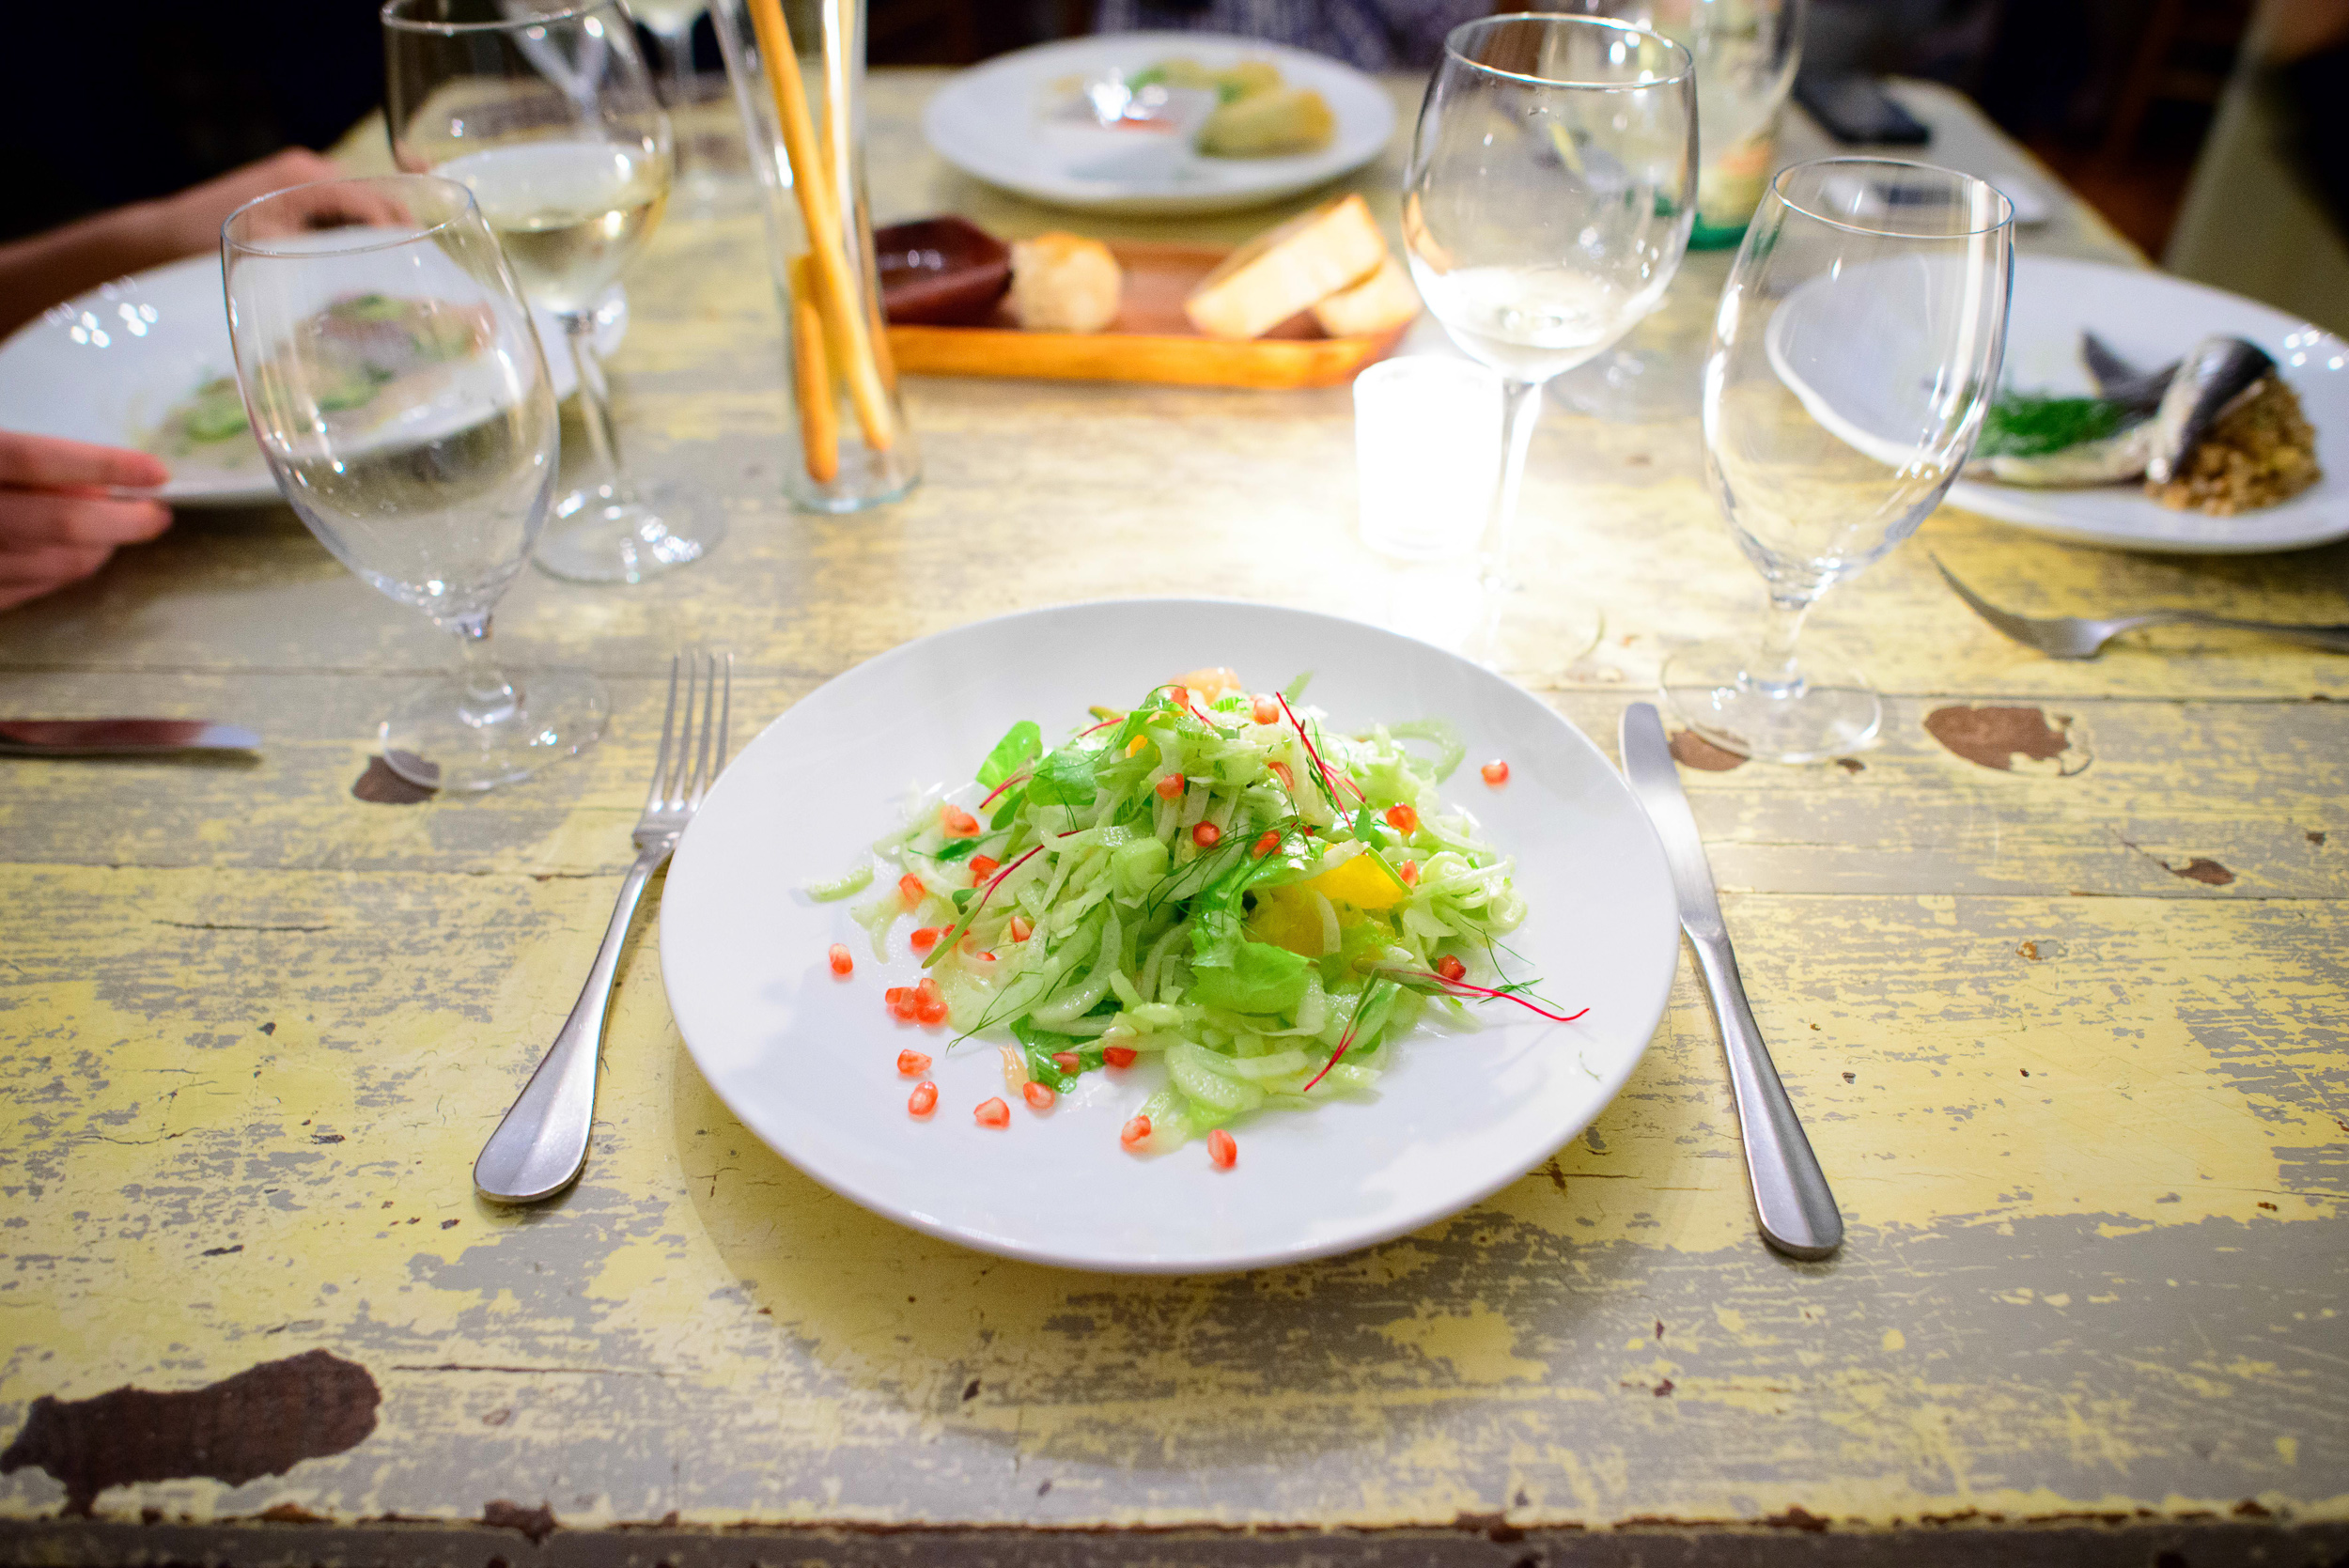 Ensalada de hinojo, cítricos y granada (Fennel bulb salad, citr